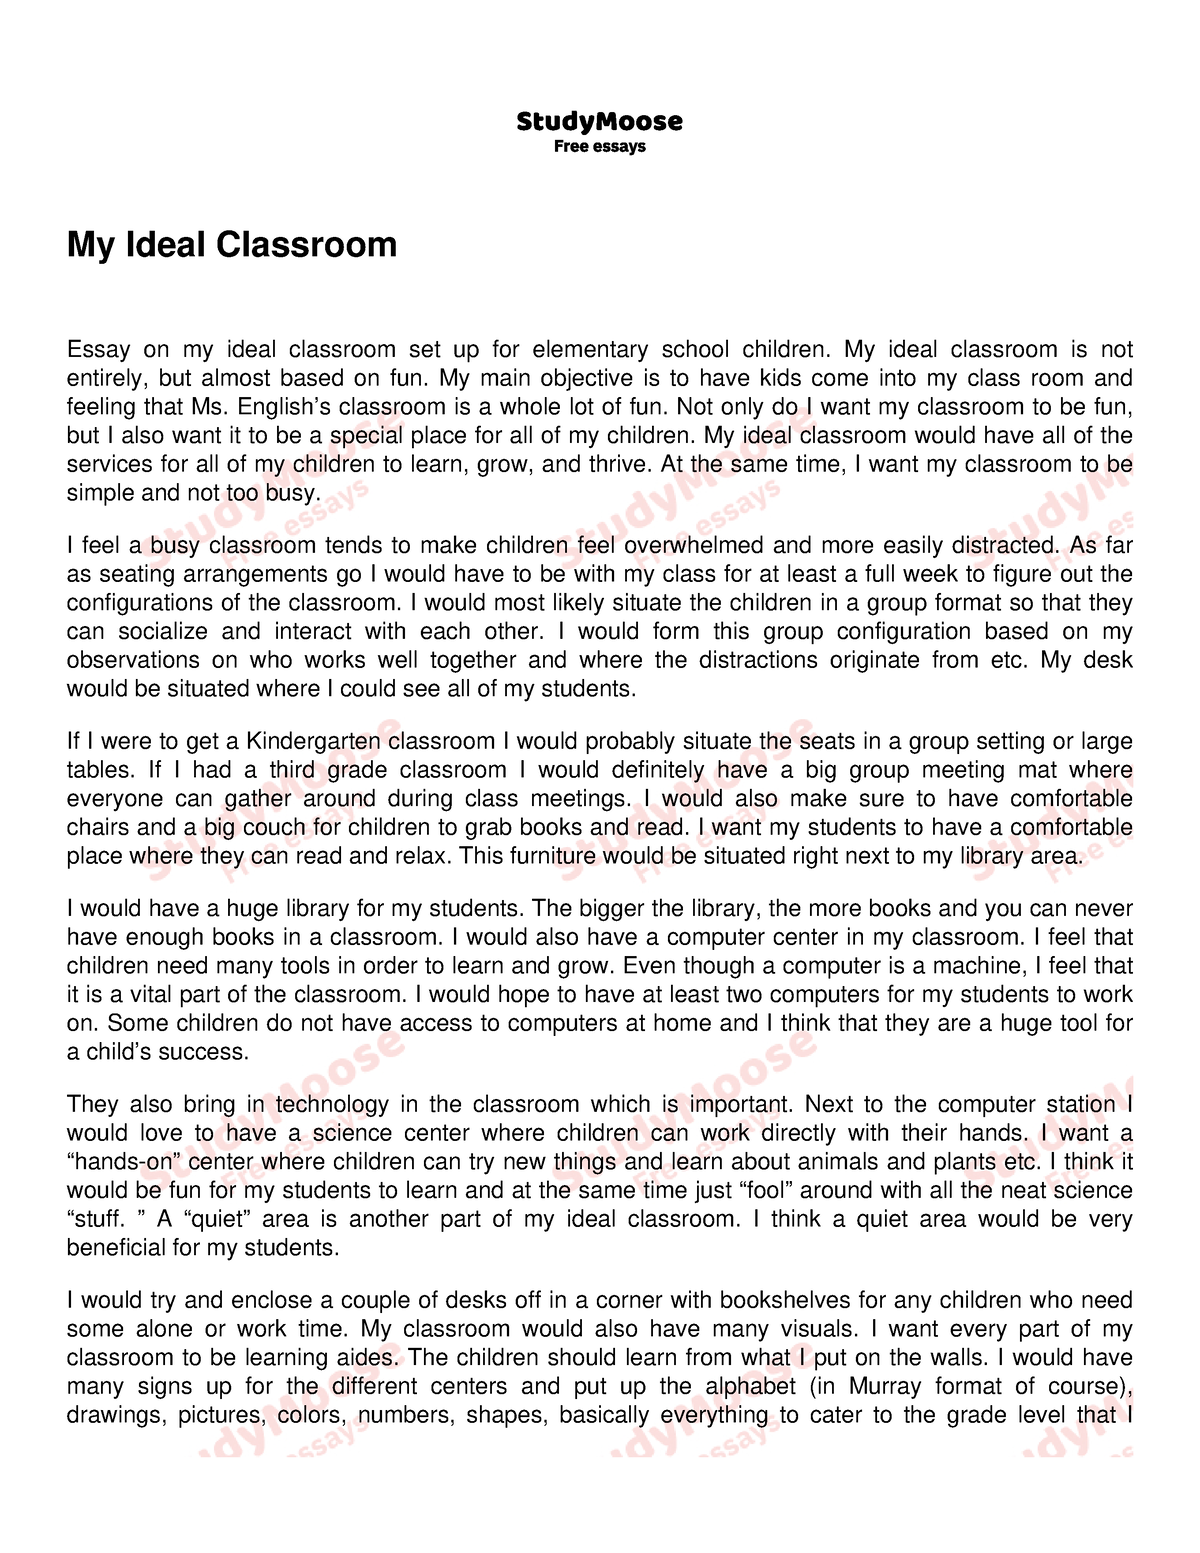 essay for classroom